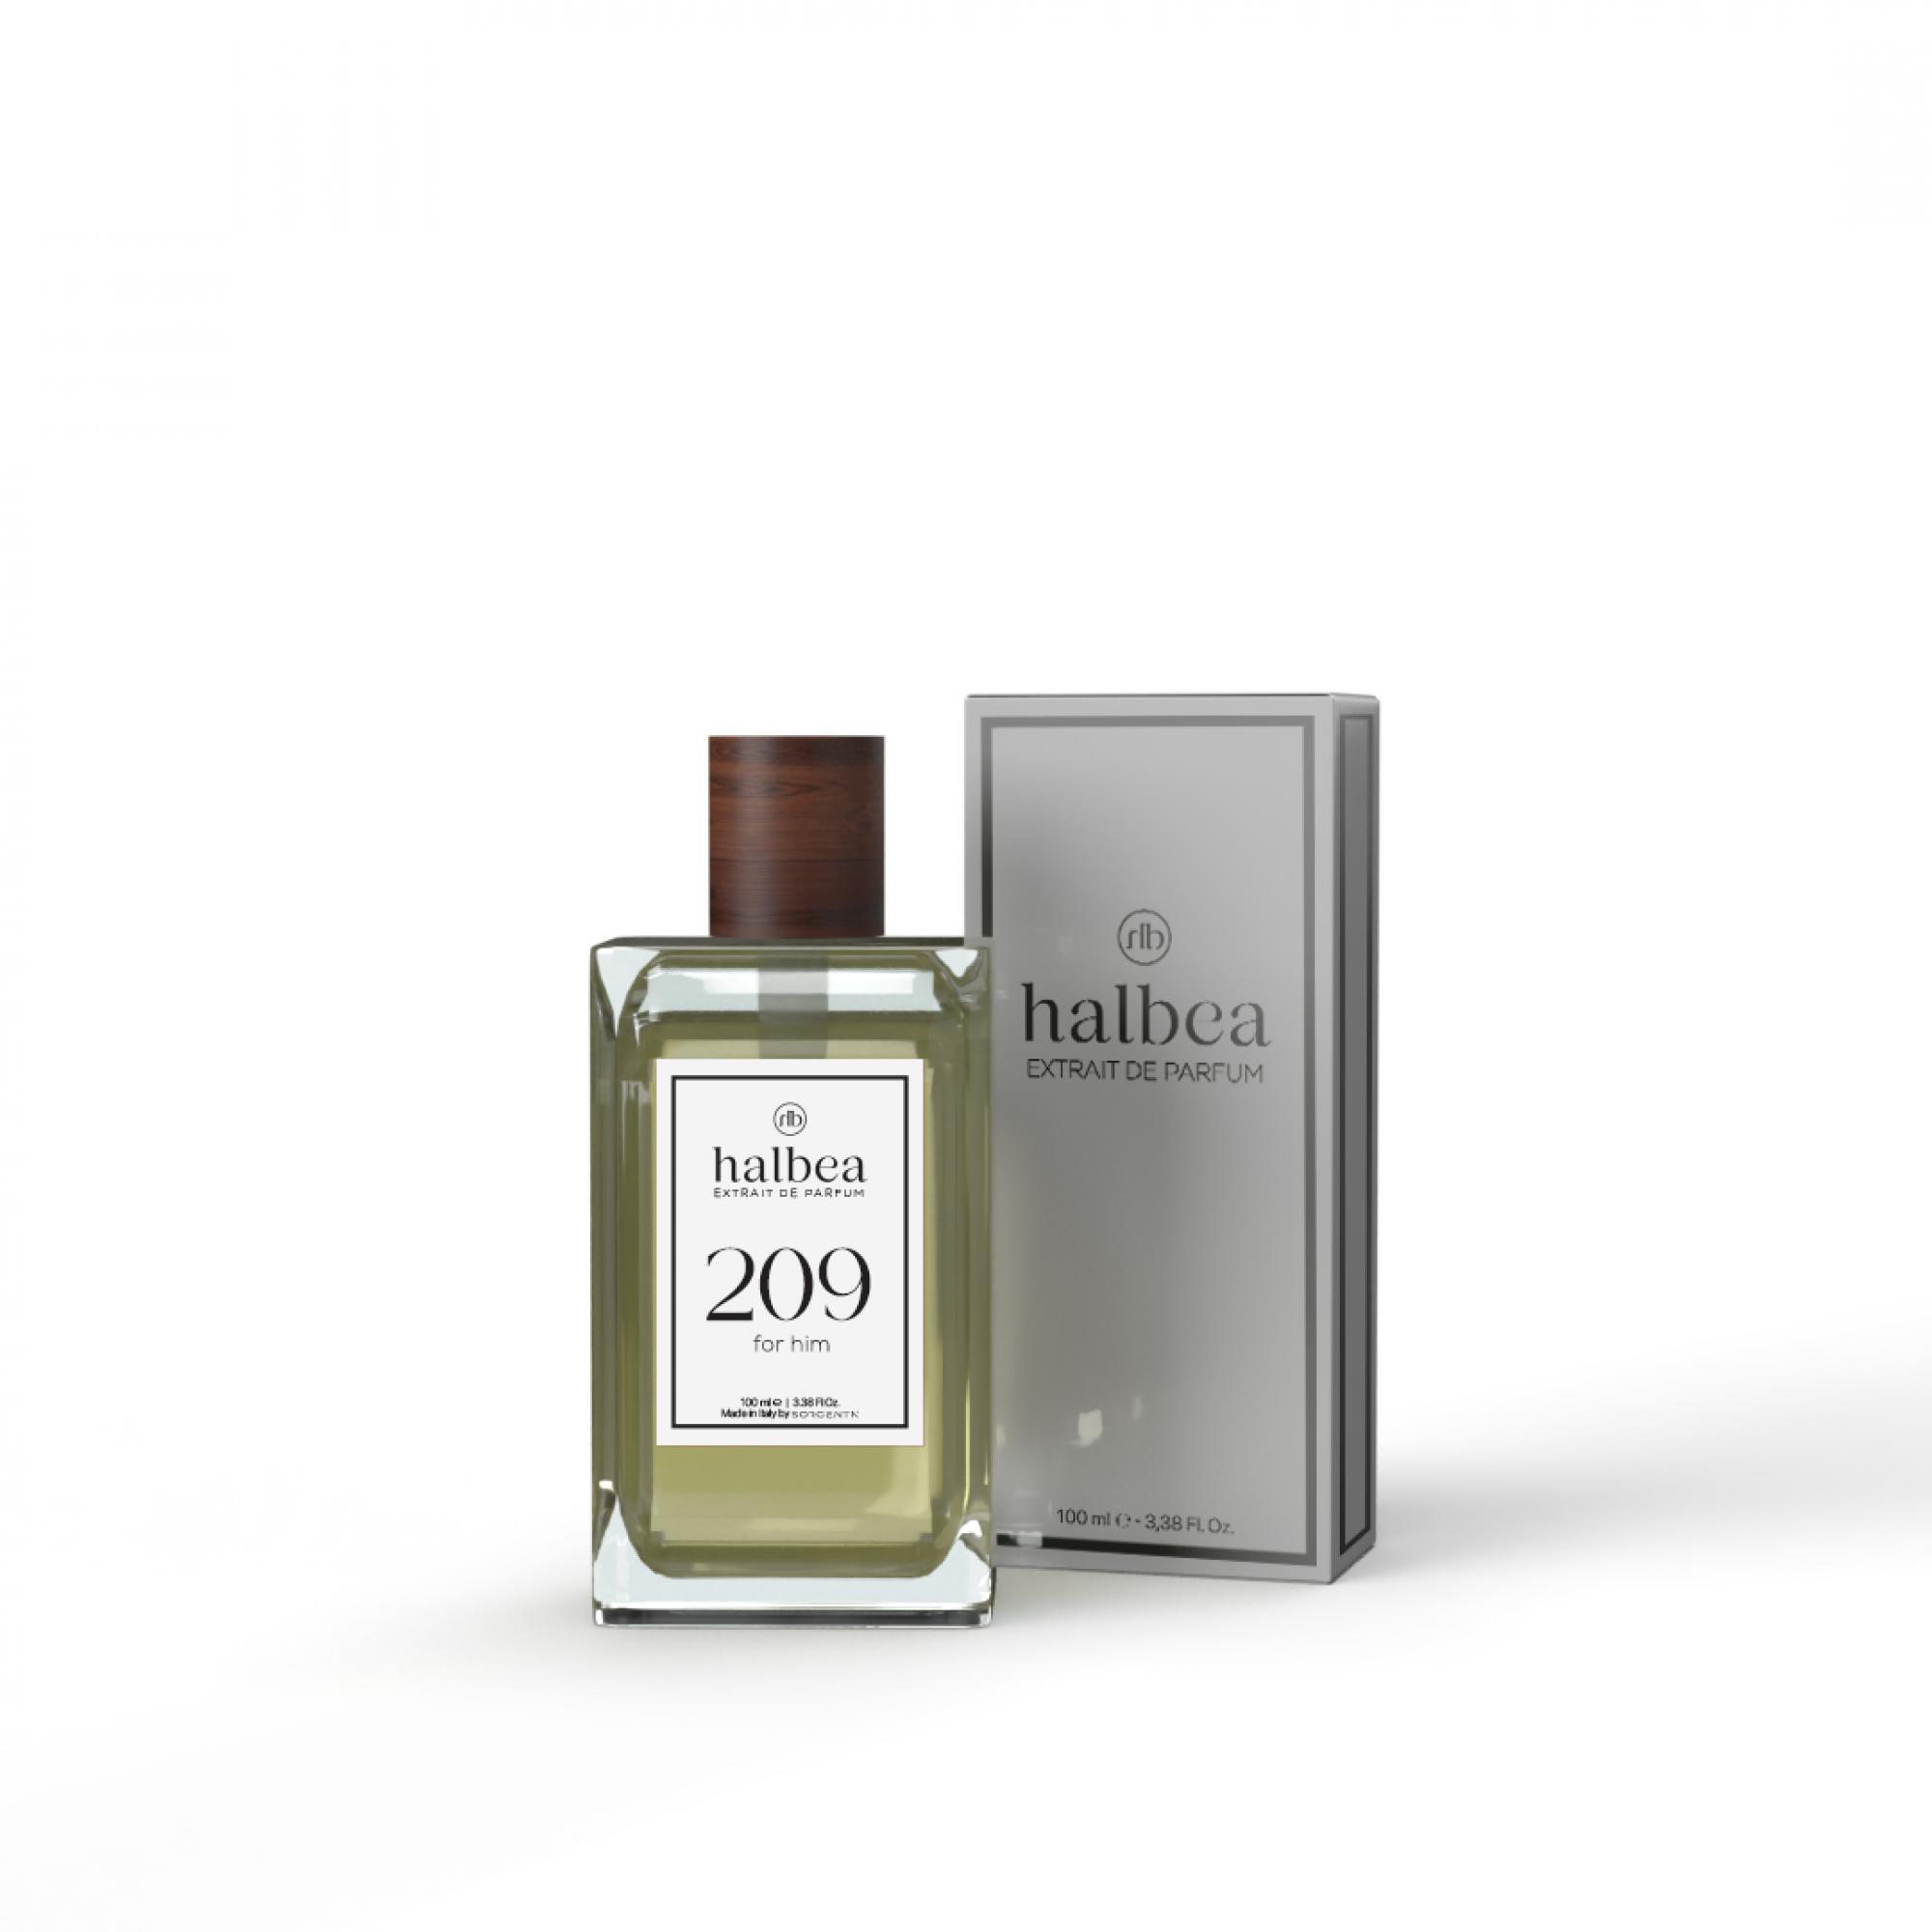 Halbea Parfum Nr. 209 insp. by Yves Saint Laurent La Nuit De L'Homme Sorgenta Duftwzillinge 100ml